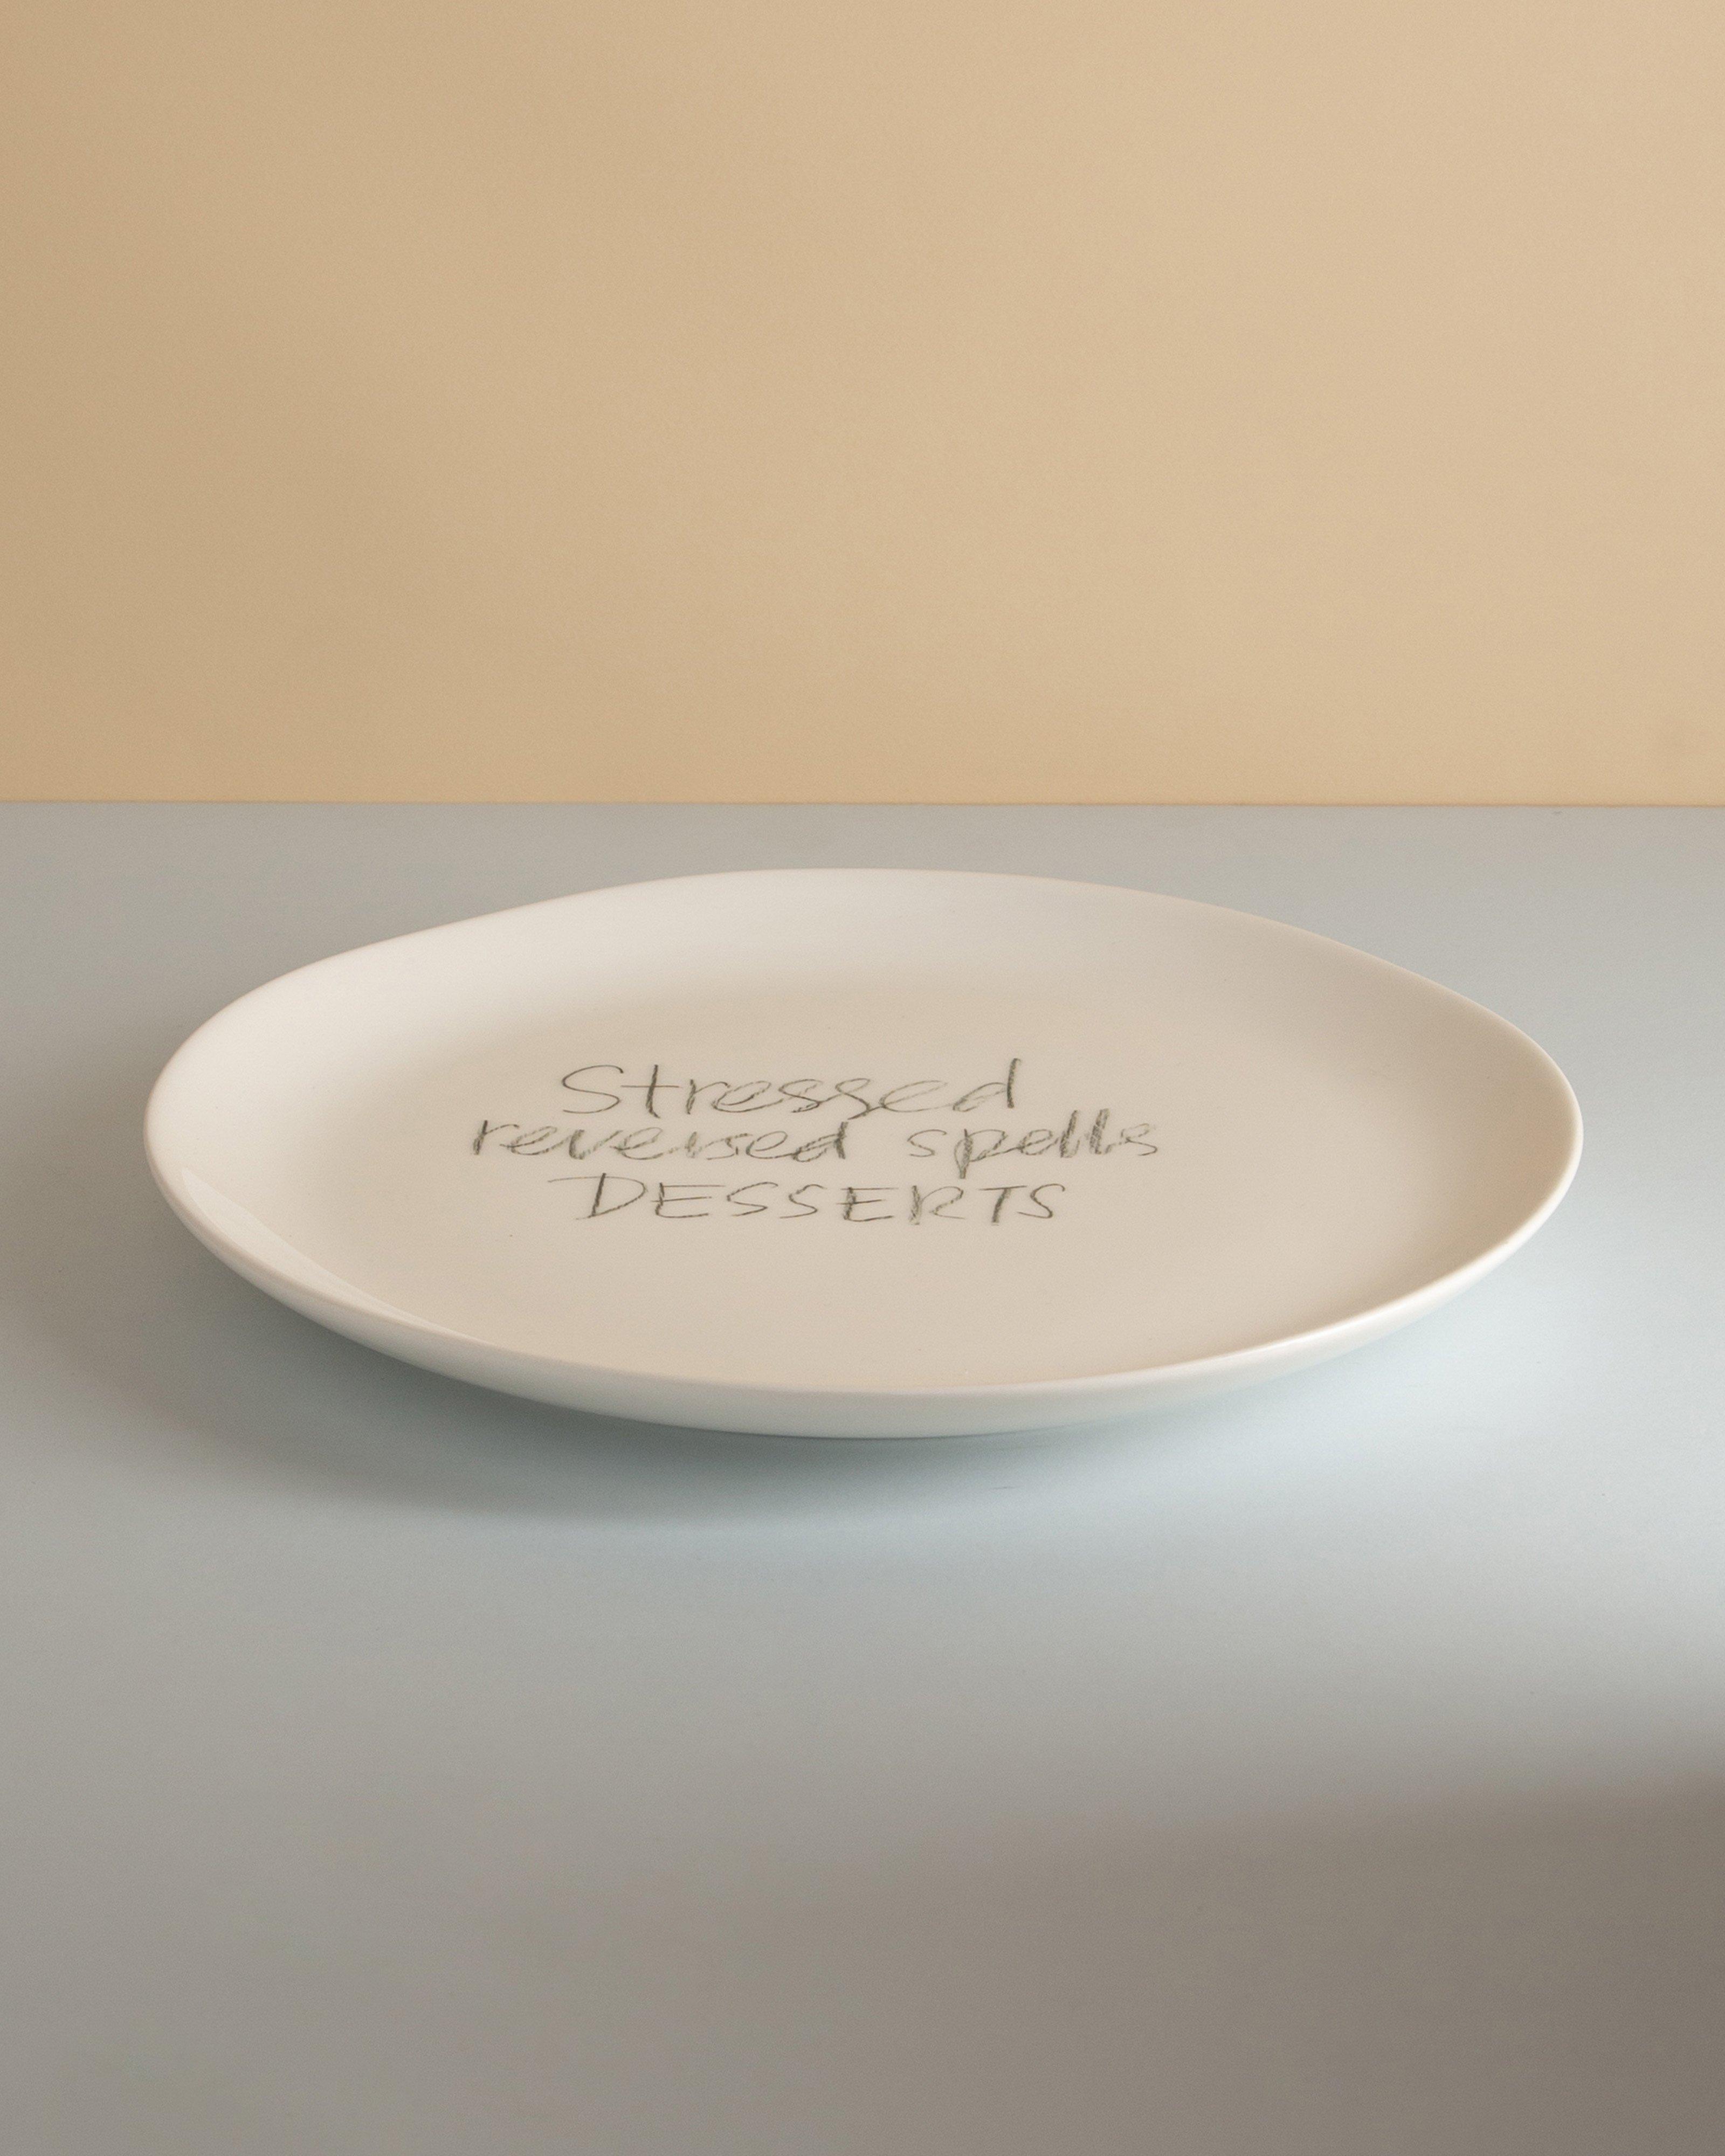 The Detailsmith "Stressed Reversed" Medium Dinner Plate -  White